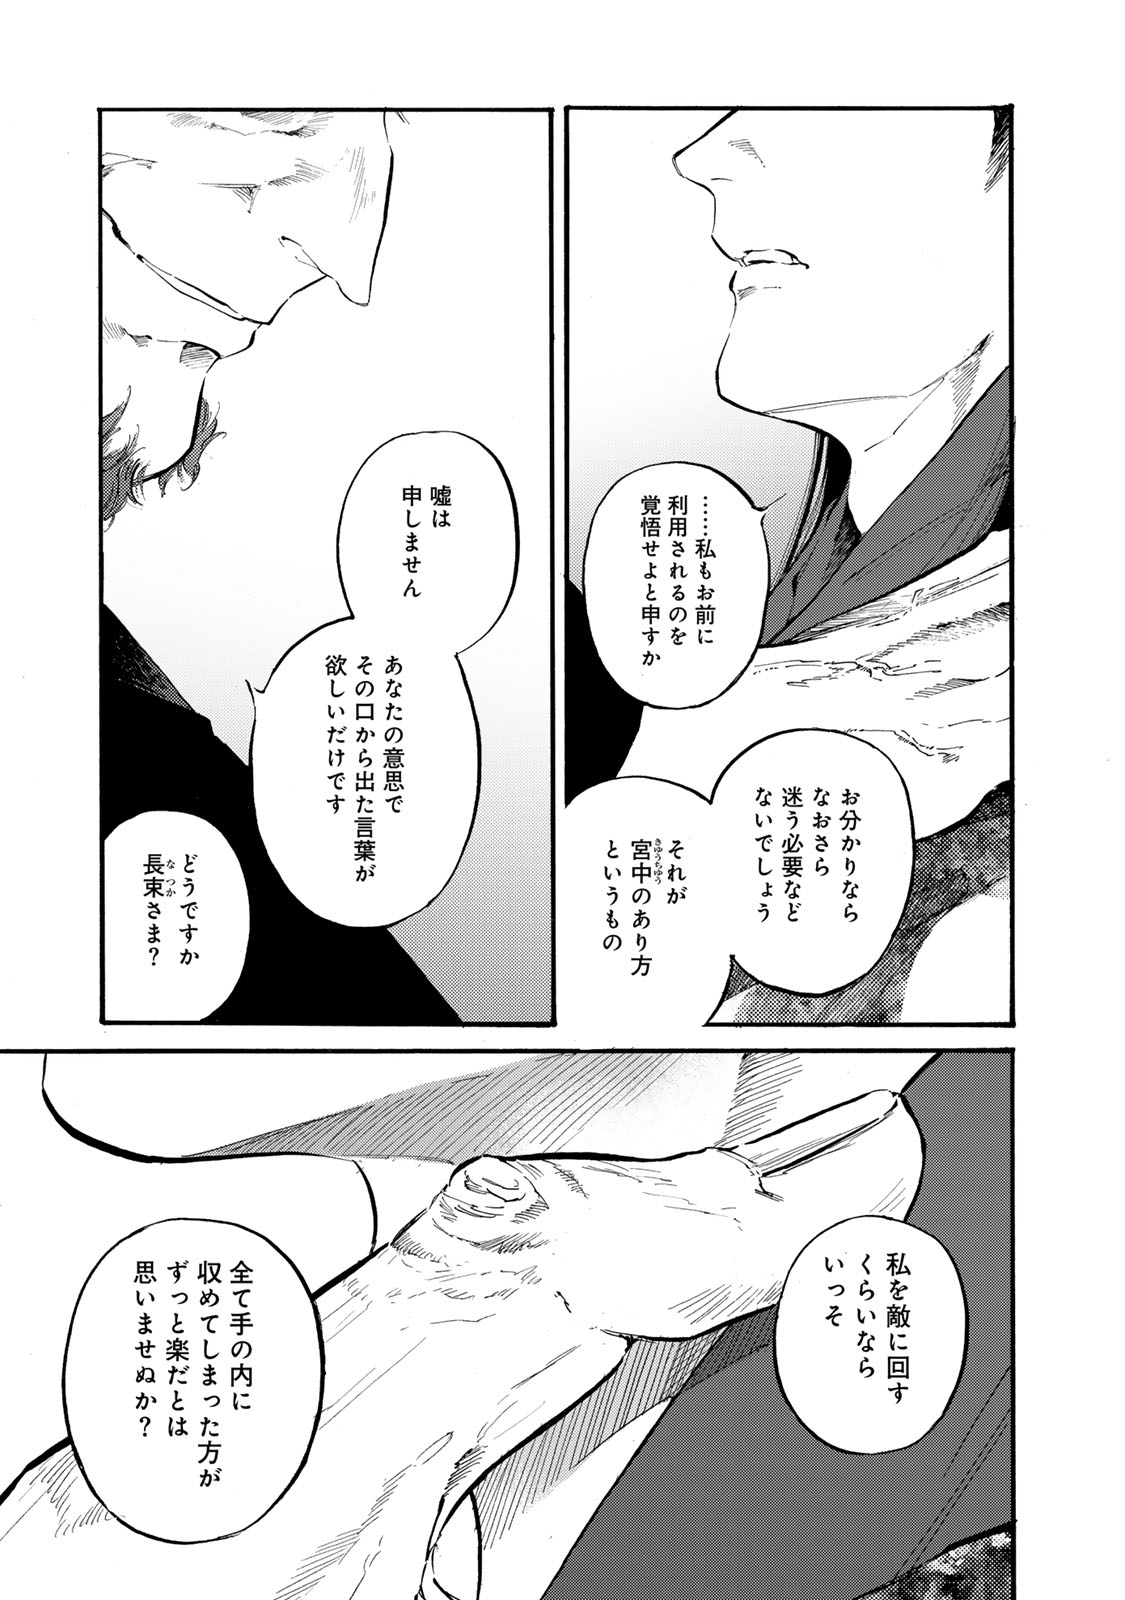 Karasu wa Aruji wo Erabanai - Chapter 39 - Page 9